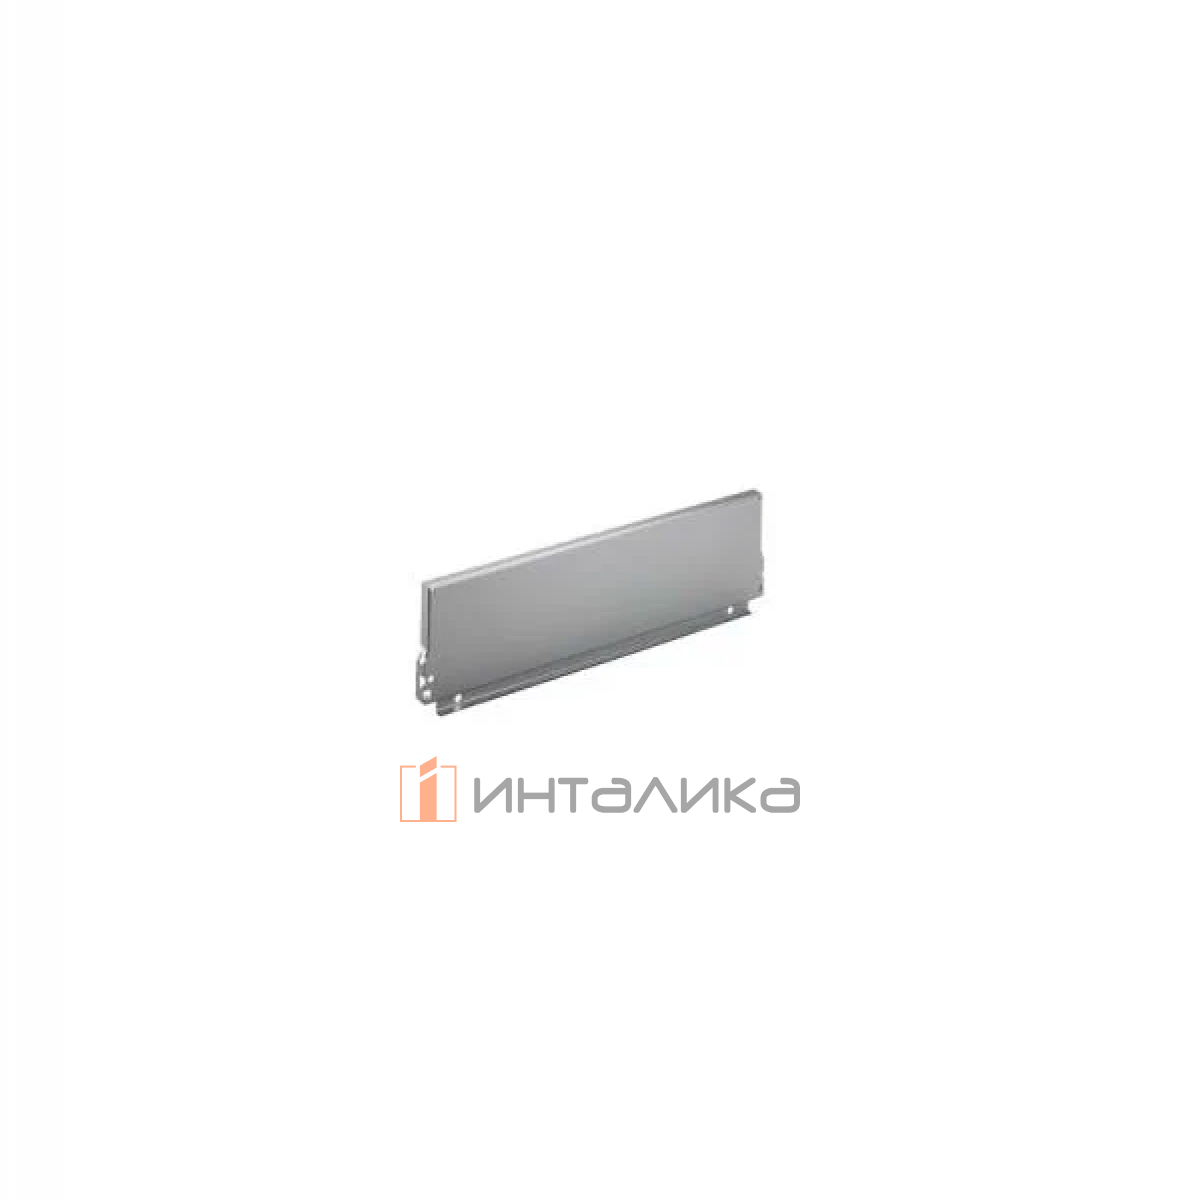 Задняя стенка HETTICH InnoTech/InnoTech Atira, высота 144мм, H600 мм, сталь, цвет серебристый, (V20)